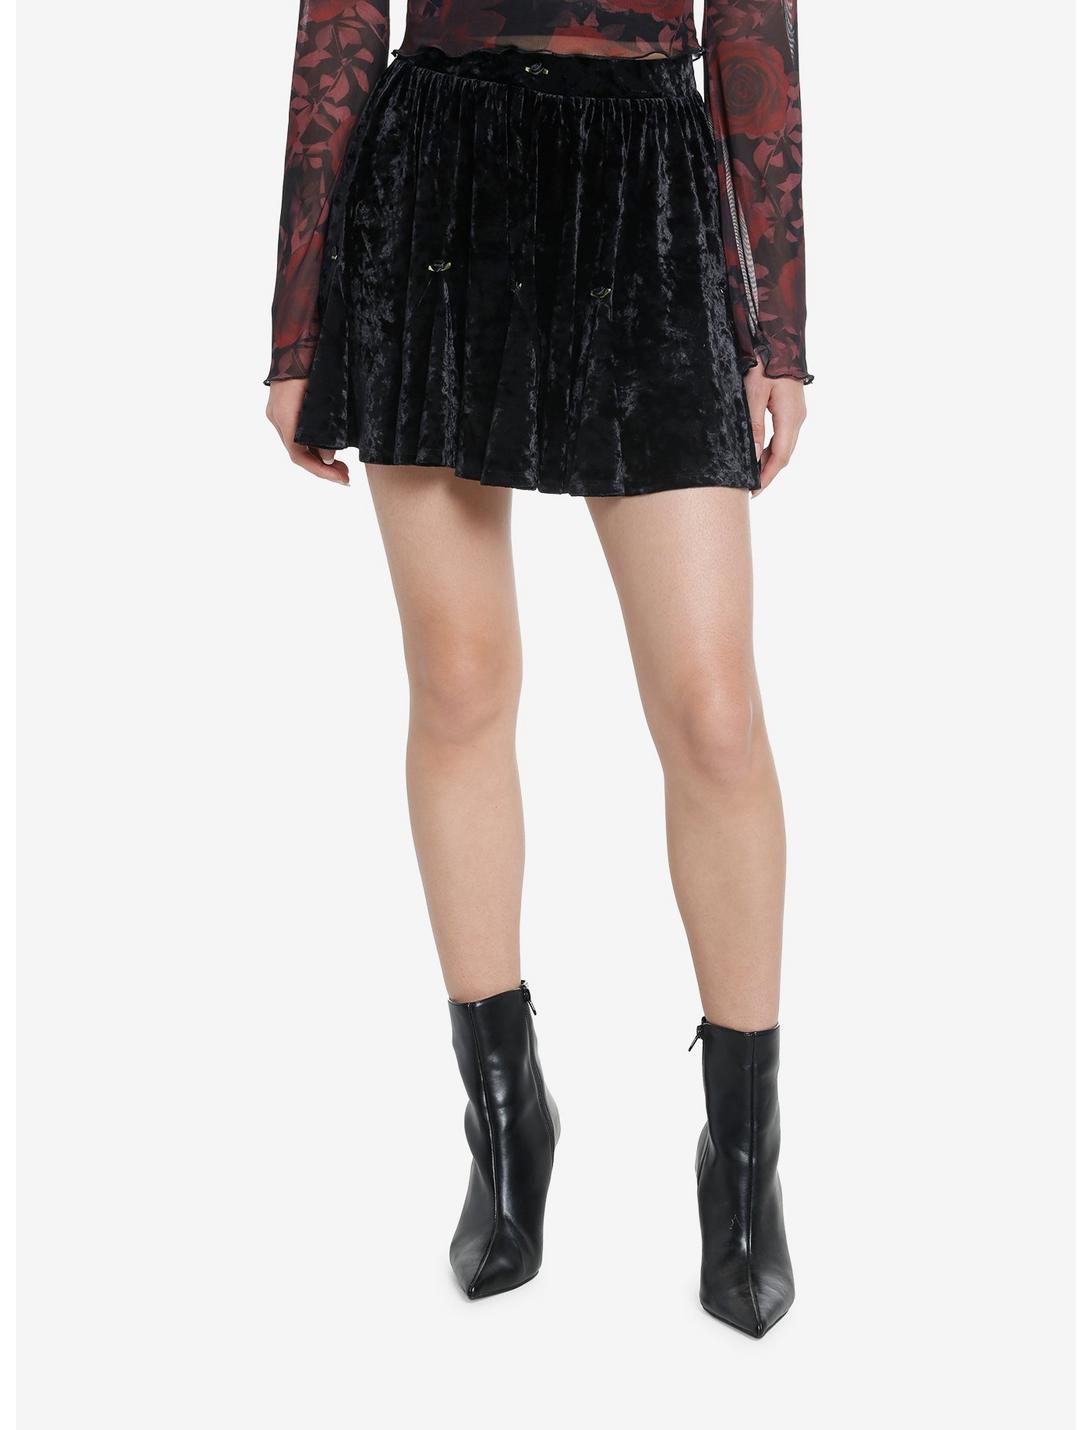 Cosmic Aura Black Velvet Rosette Godet Mini Skirt, BLACK, hi-res